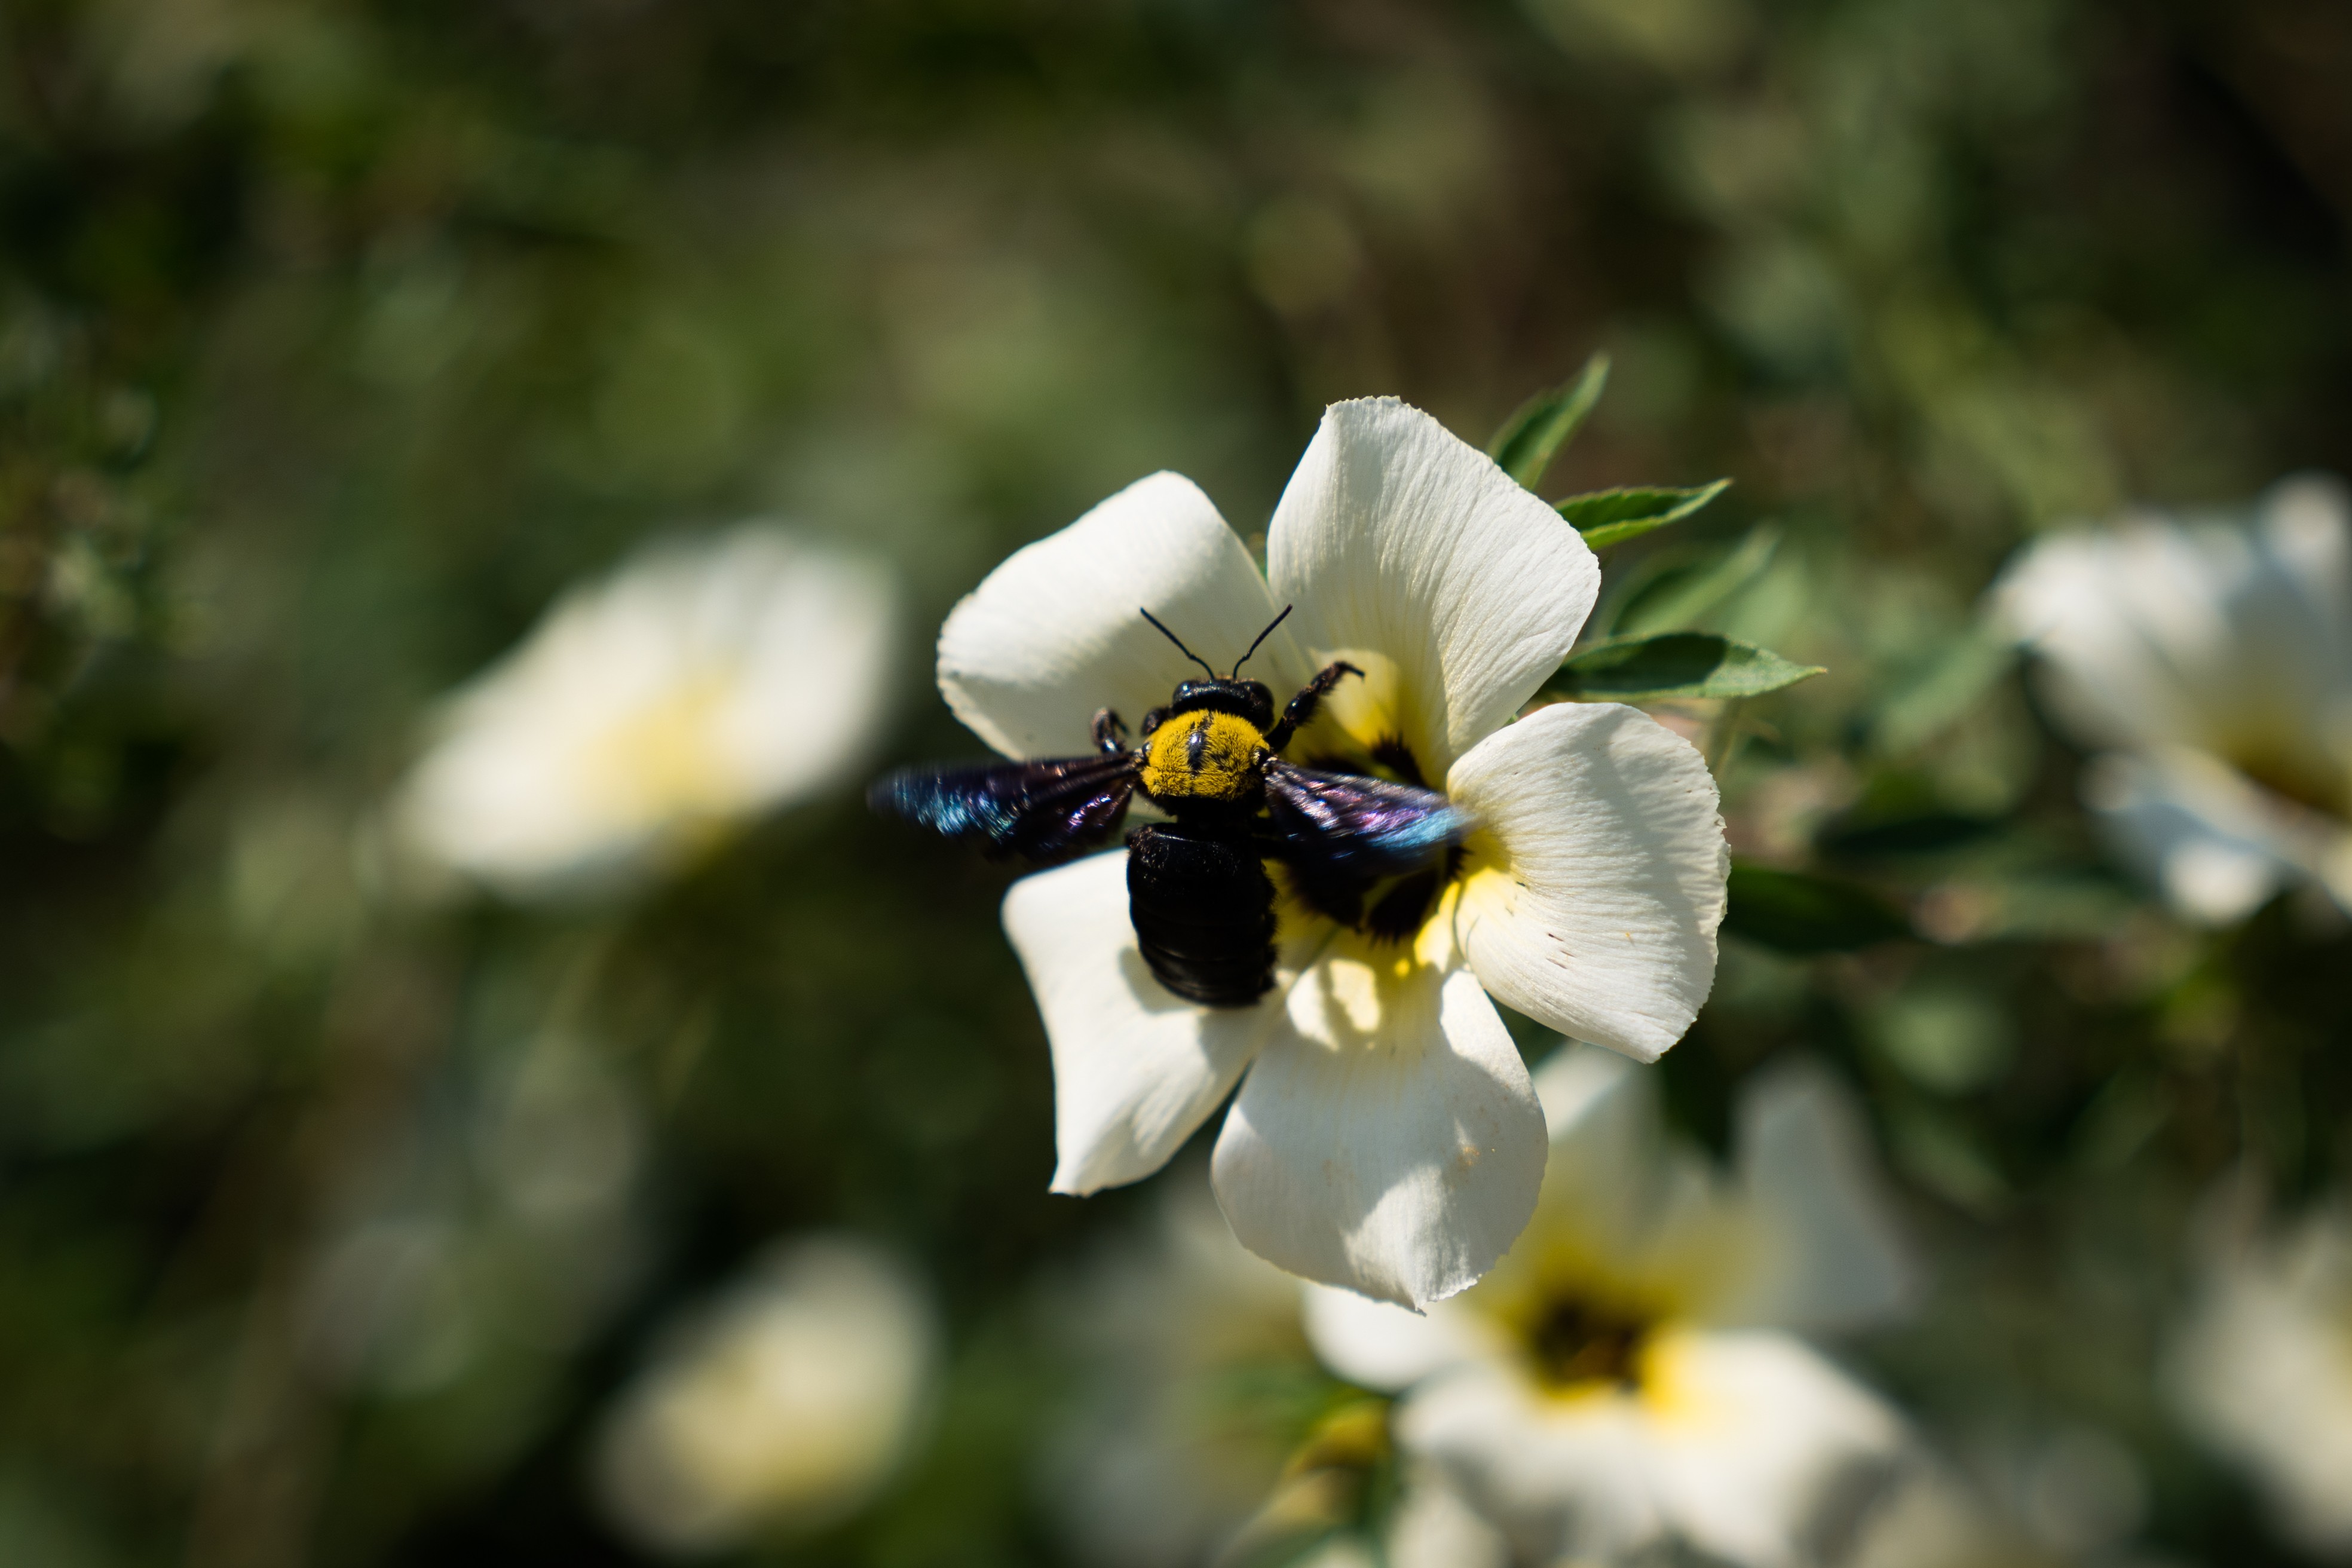 Bumblebee putrajaya